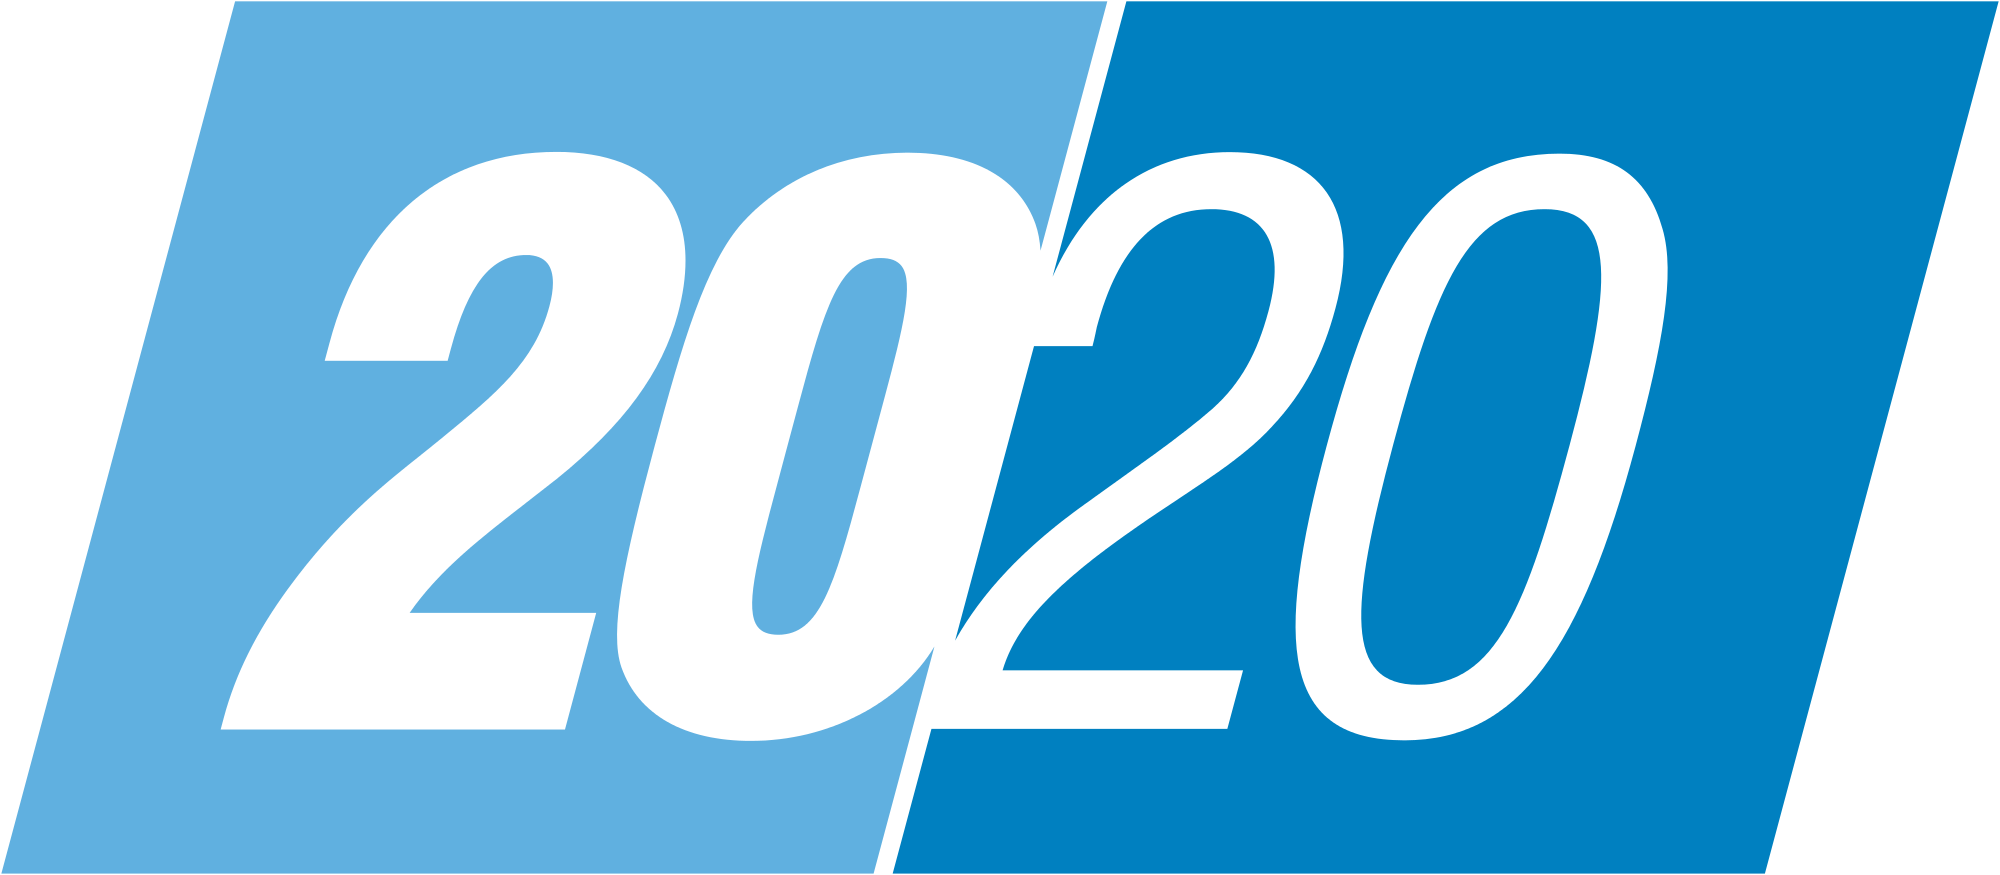 2020 logo png. 2020 Лого. 2020 Иконка. Цифра 2020 логотип. 2020 Вектор цифры.